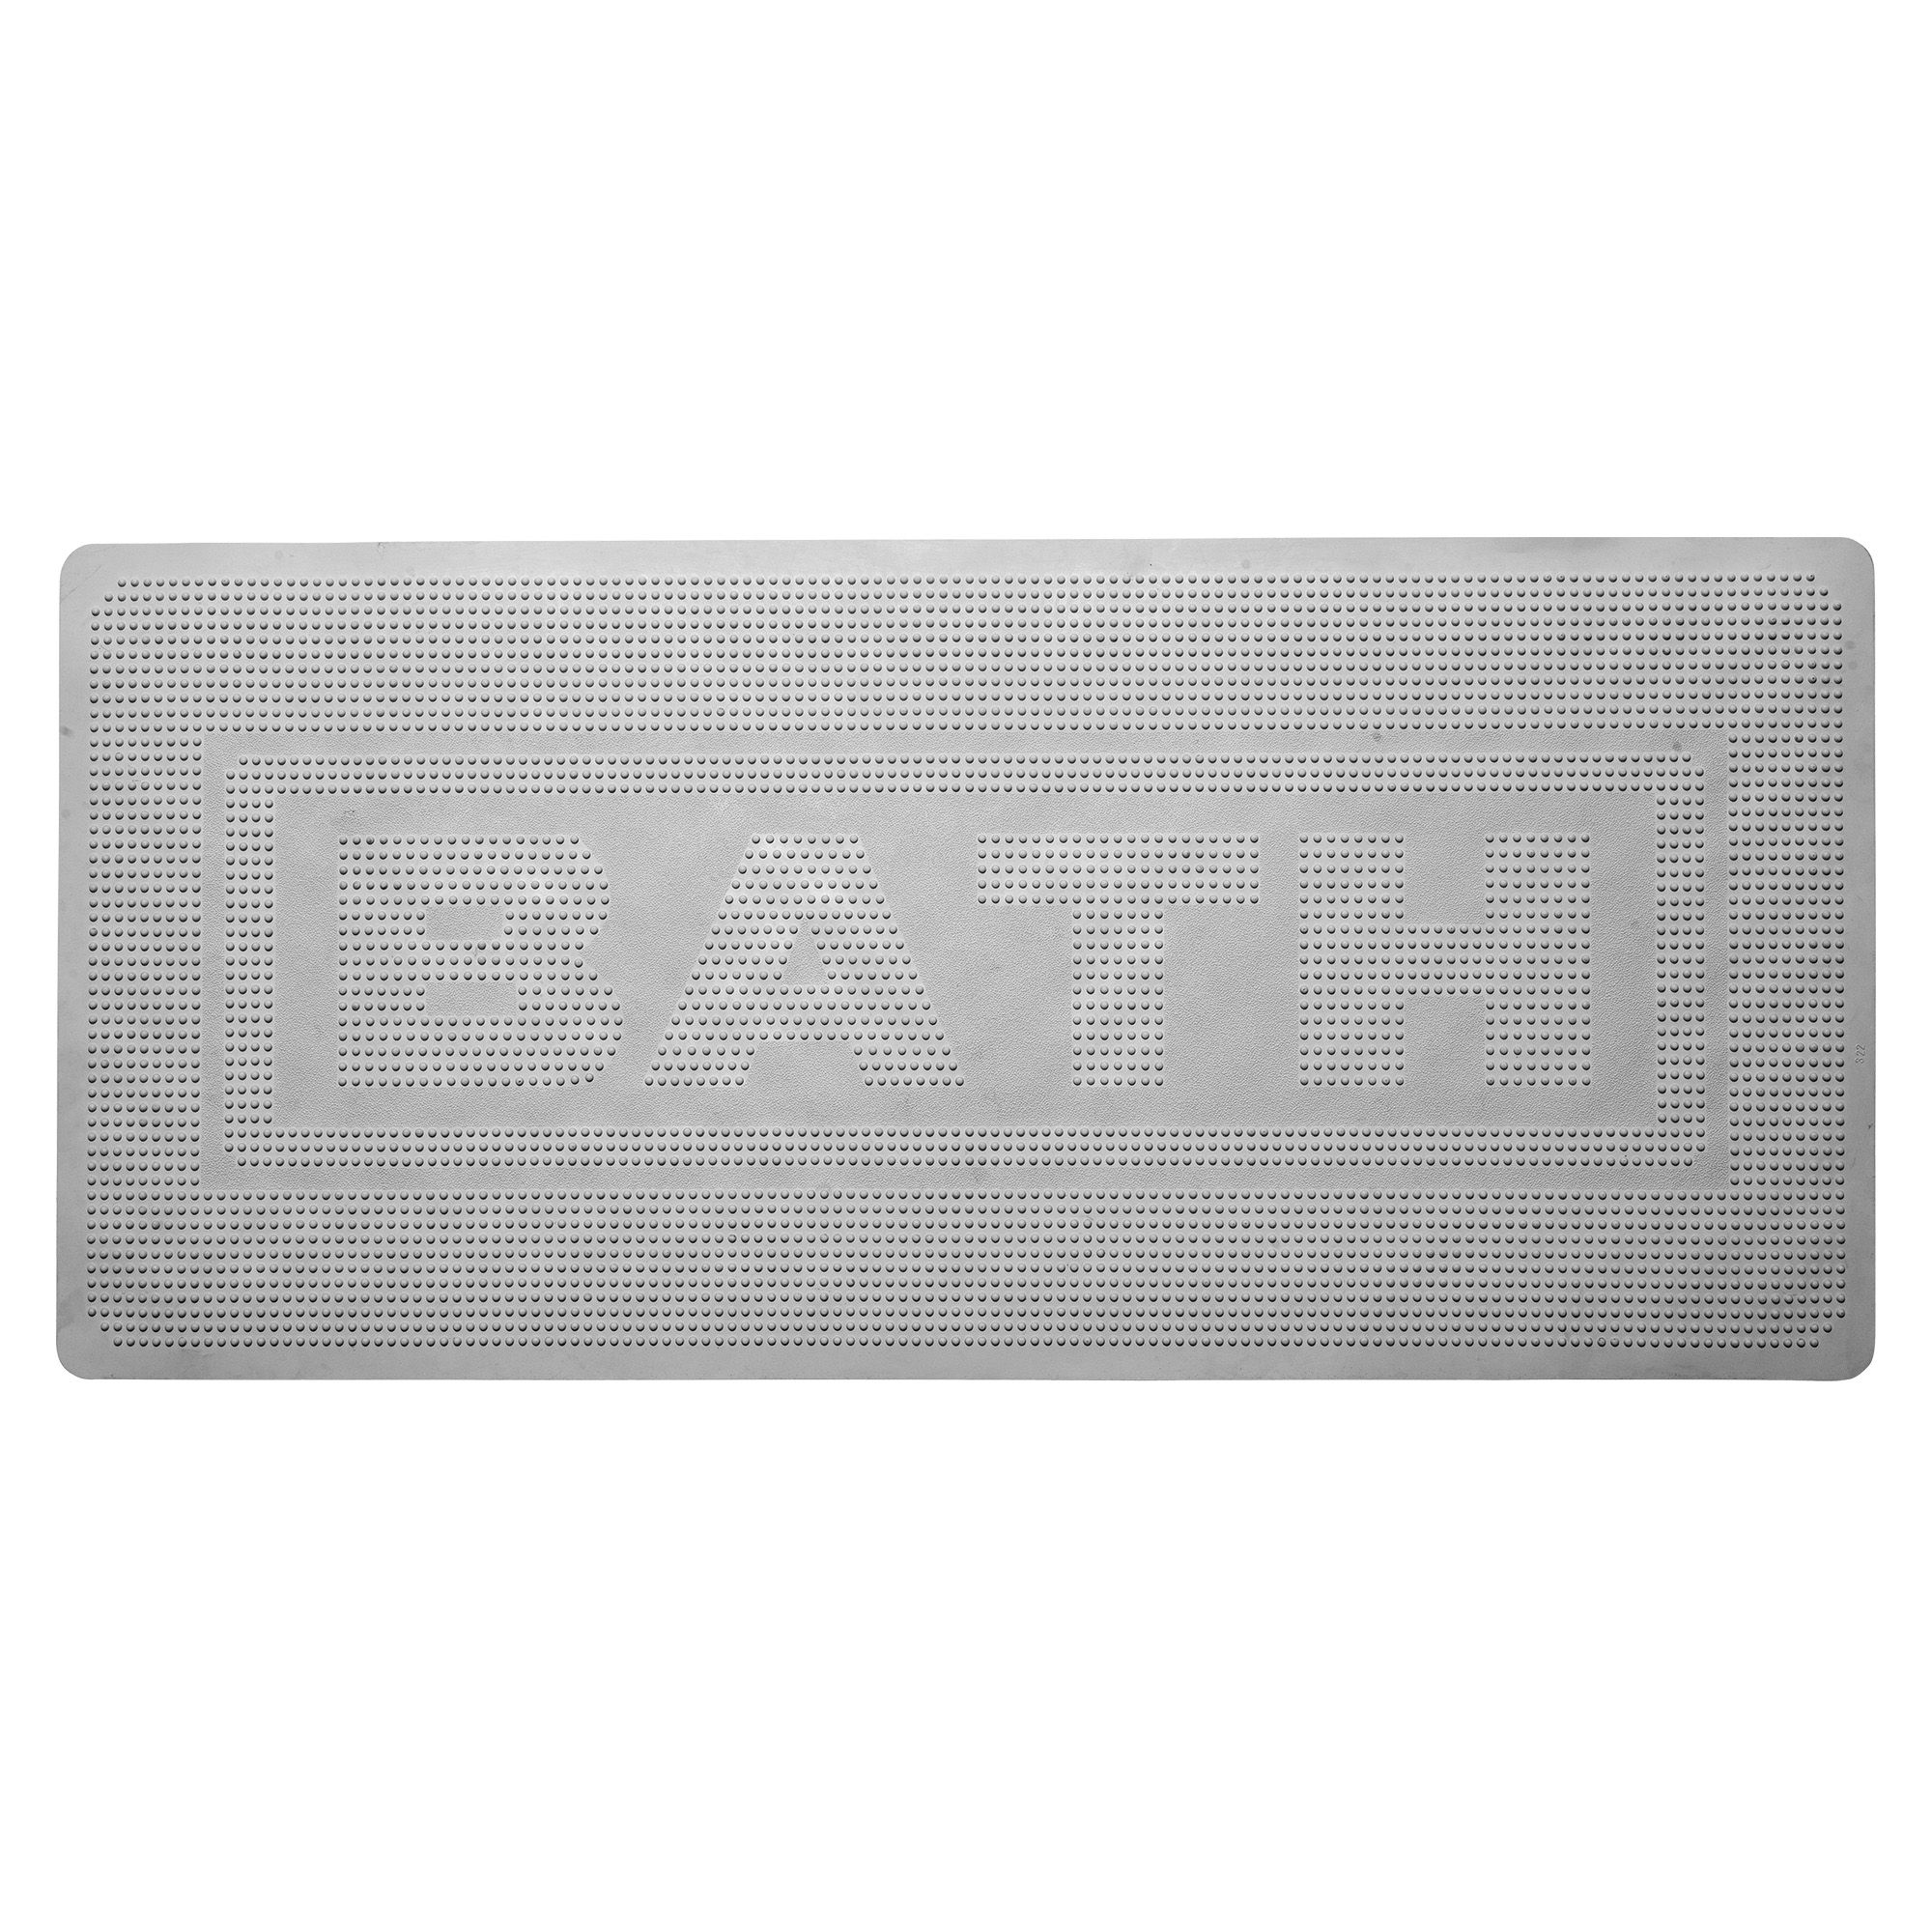 Croydex Rubagrip Grey Rectangular Bath mat (L)74cm (W)34cm